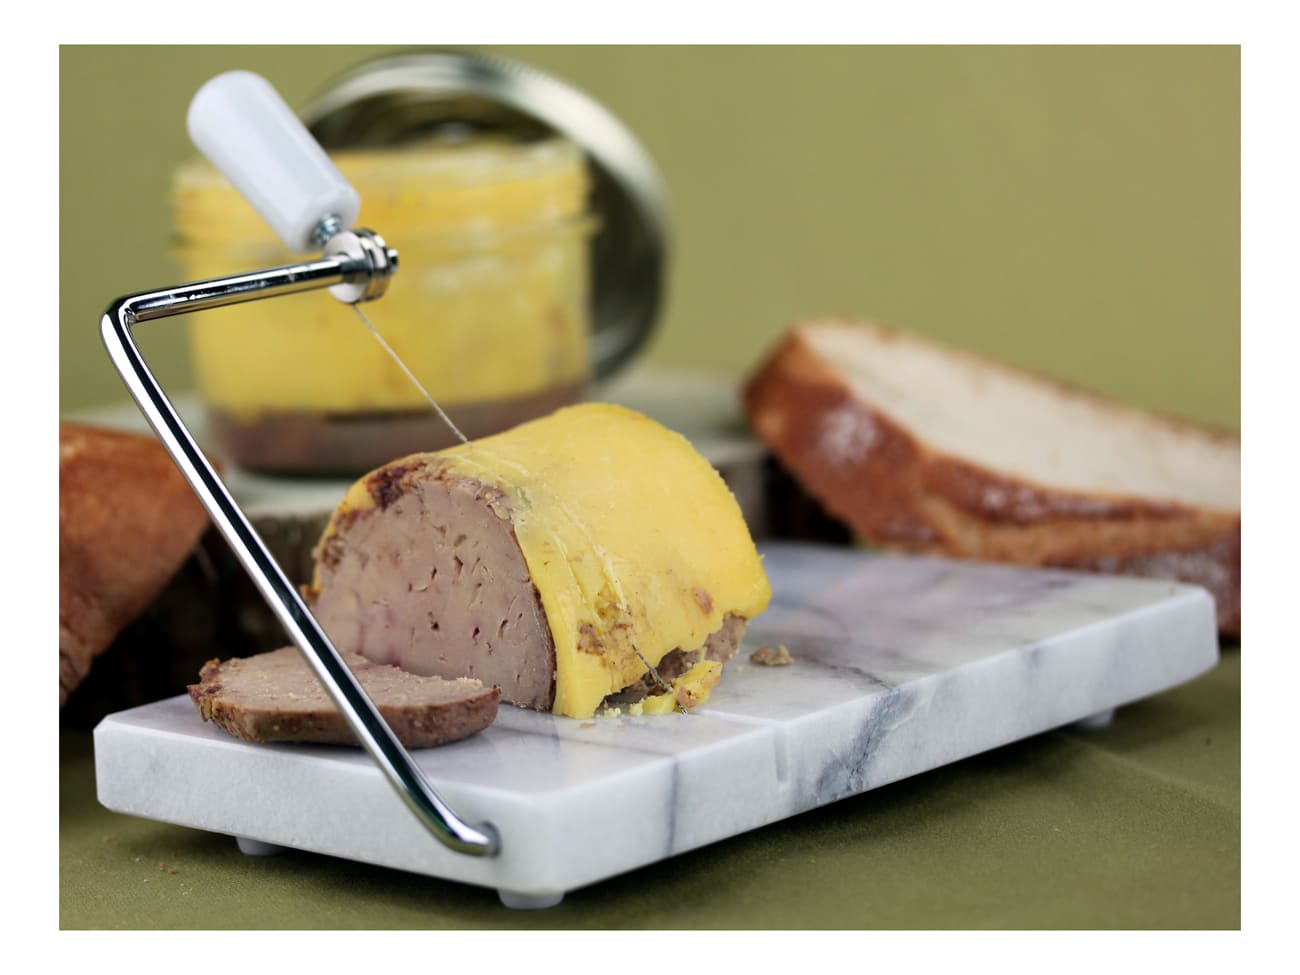 Coupe fromage ou foie gras en marbre noir avec fil de coupe